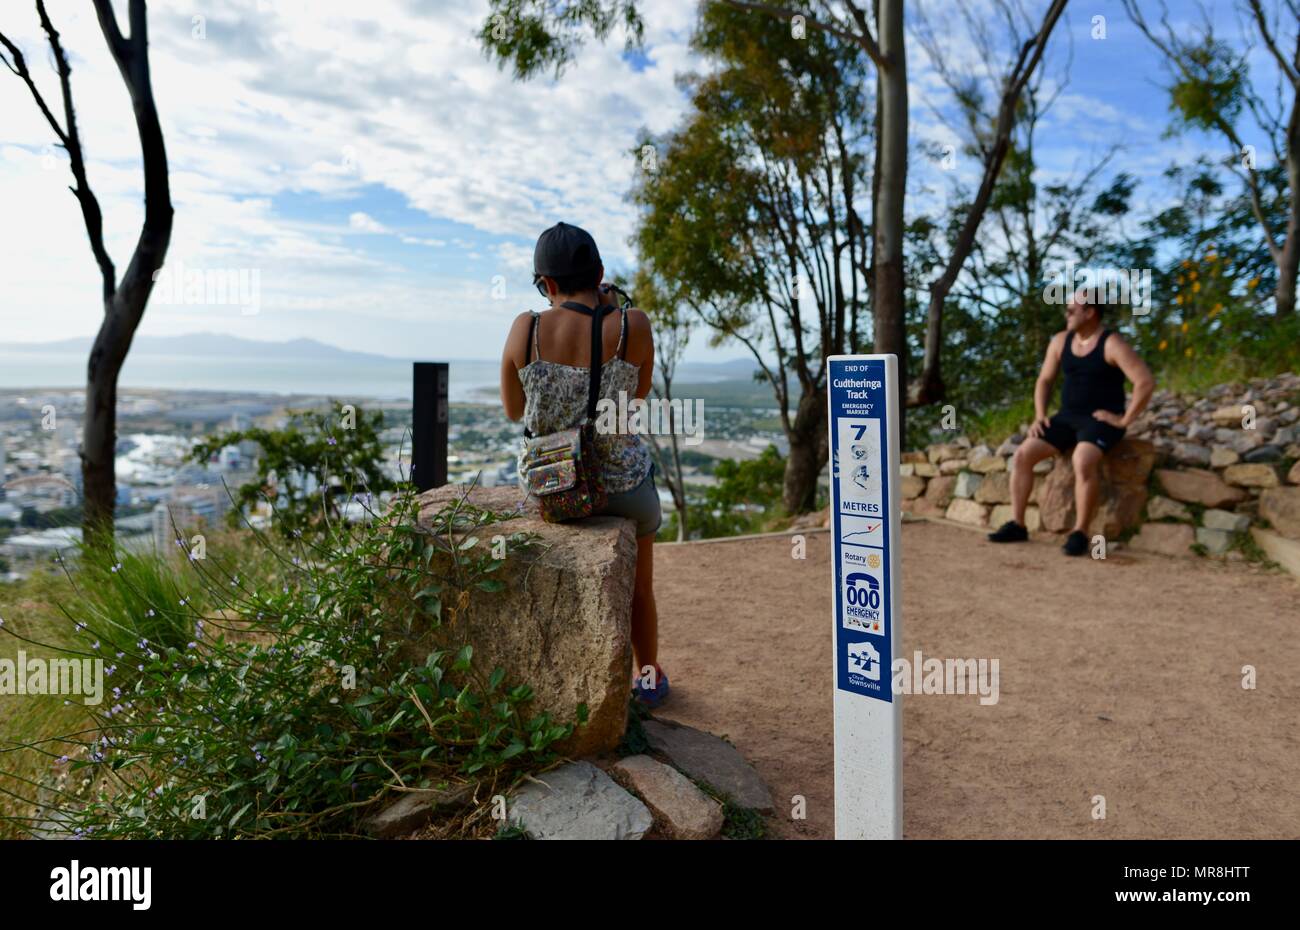 Frau nimmt ein Foto von Townsville in der Nähe des Cudtheringa track Meilenstein Abstand Zeichen signage ging, Castle Hill, QLD 4810, Australien Stockfoto